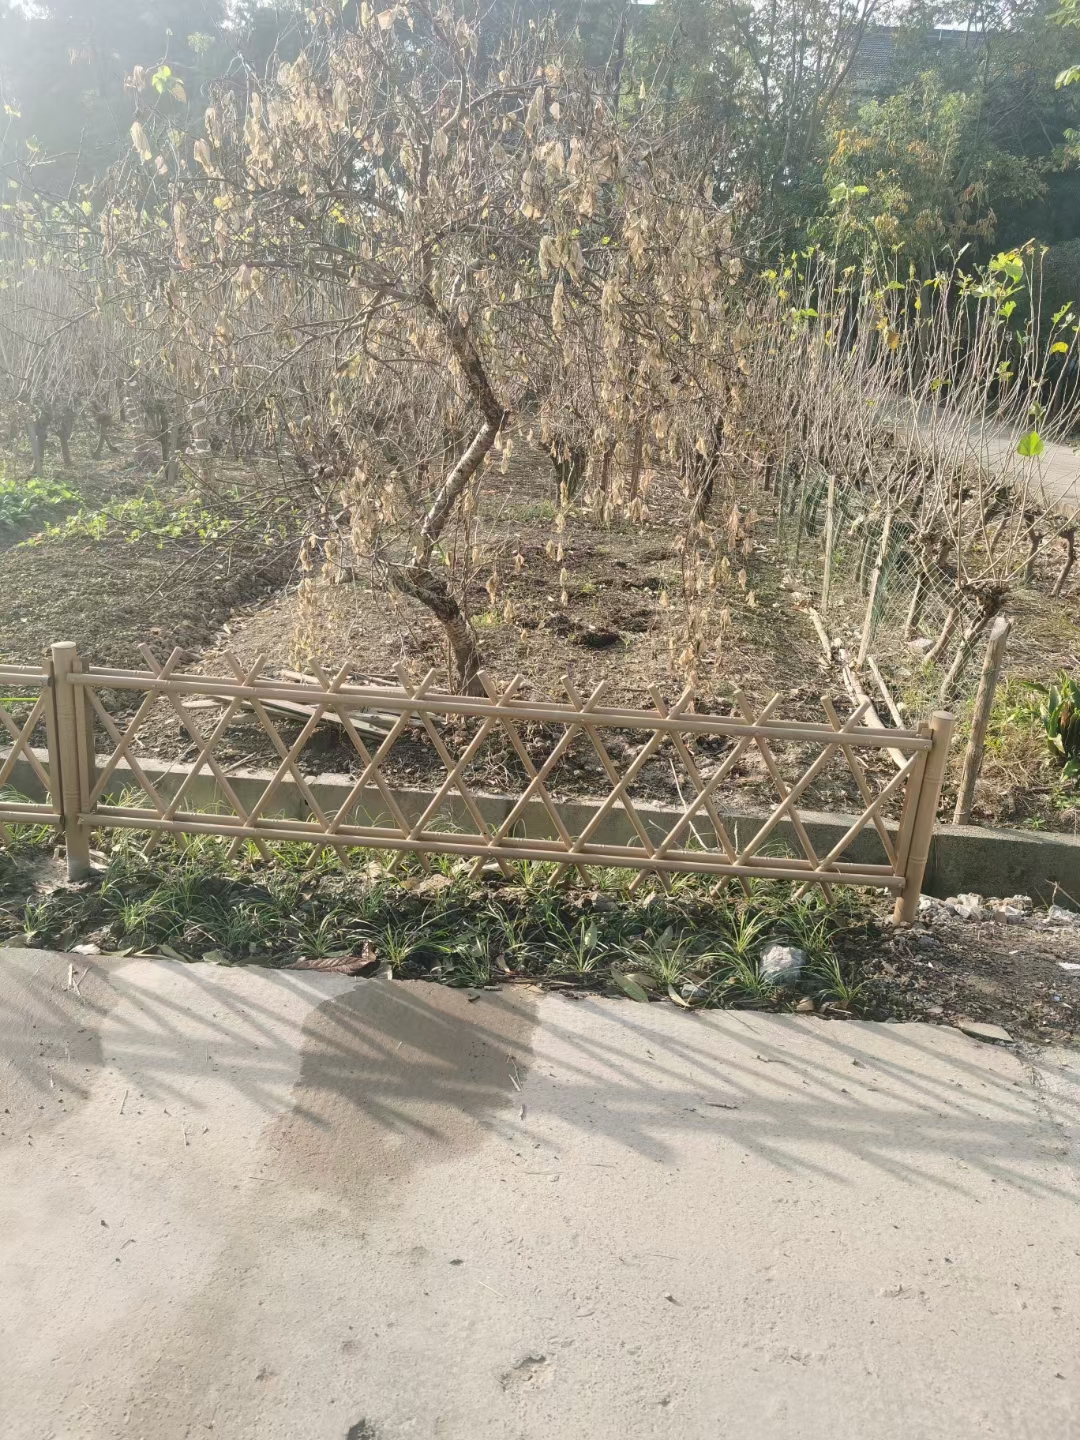 鄂尔多斯 竹篱笆 竹子篱笆台州温岭塑钢护栏仿竹护栏